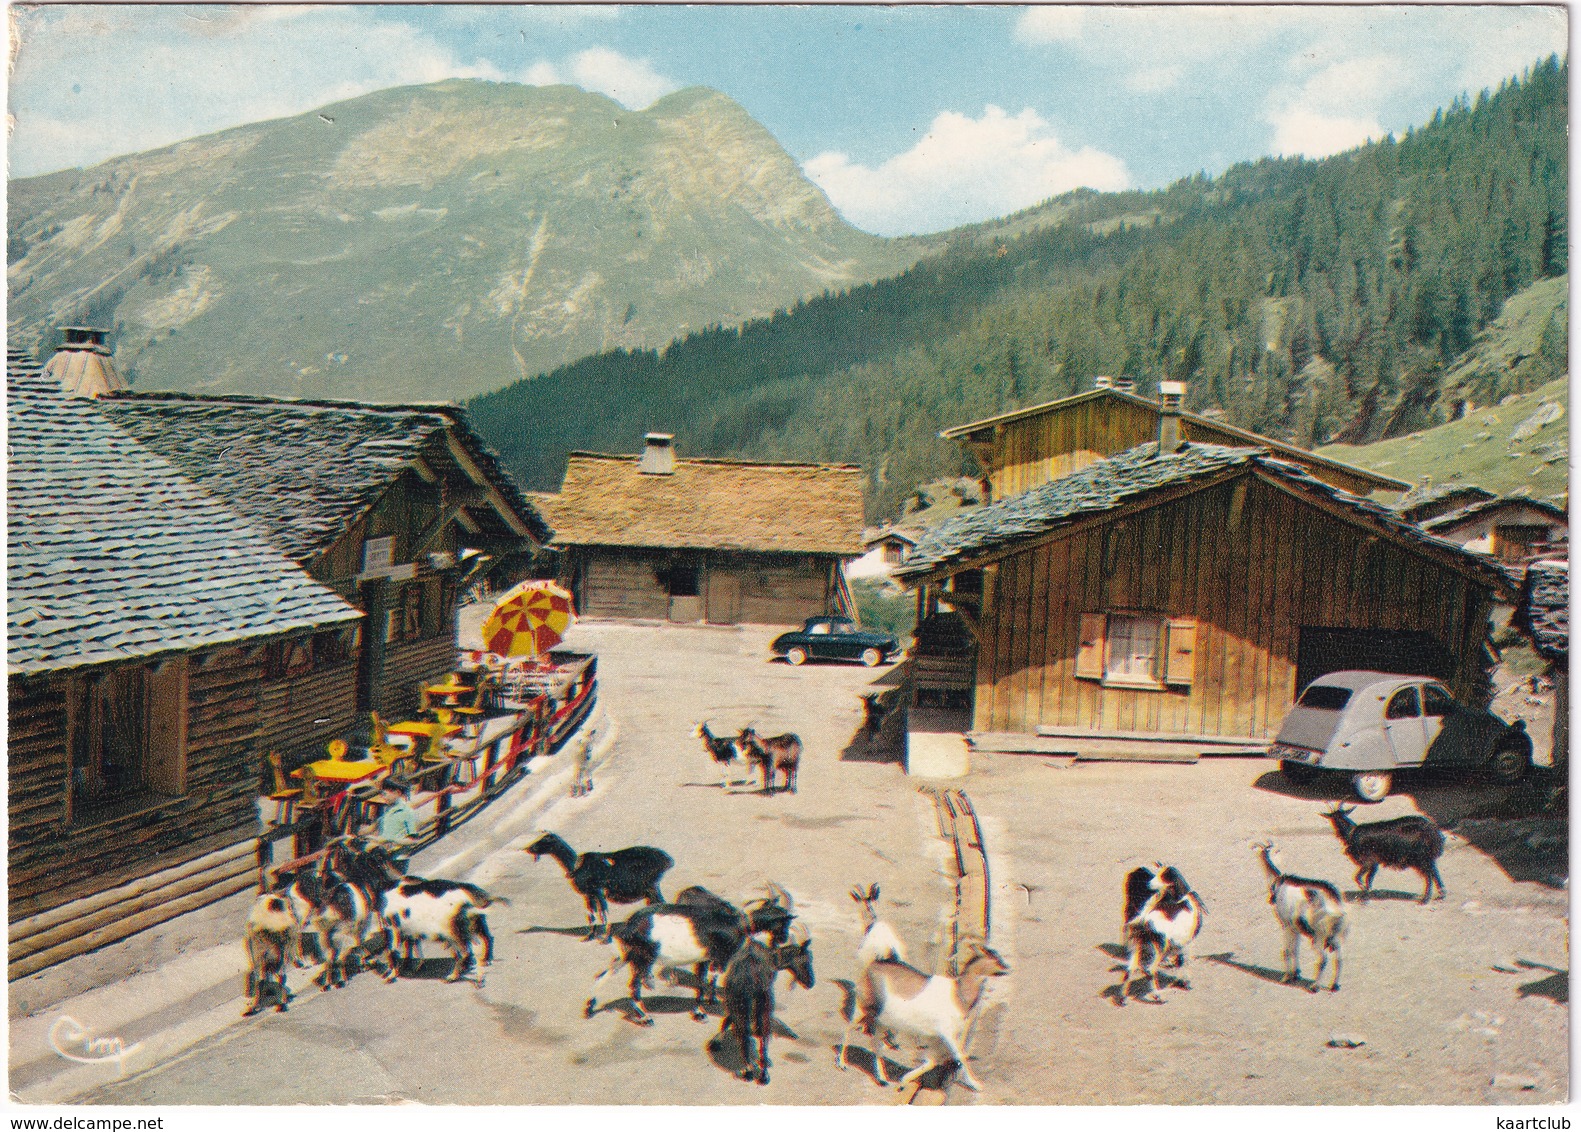 Les Lindarets: CITROËN 2CV - CHÈVRE - RENAULT DAUPHINE - Alt. 1.470 M. - (Hte-Savoie) - Toerisme